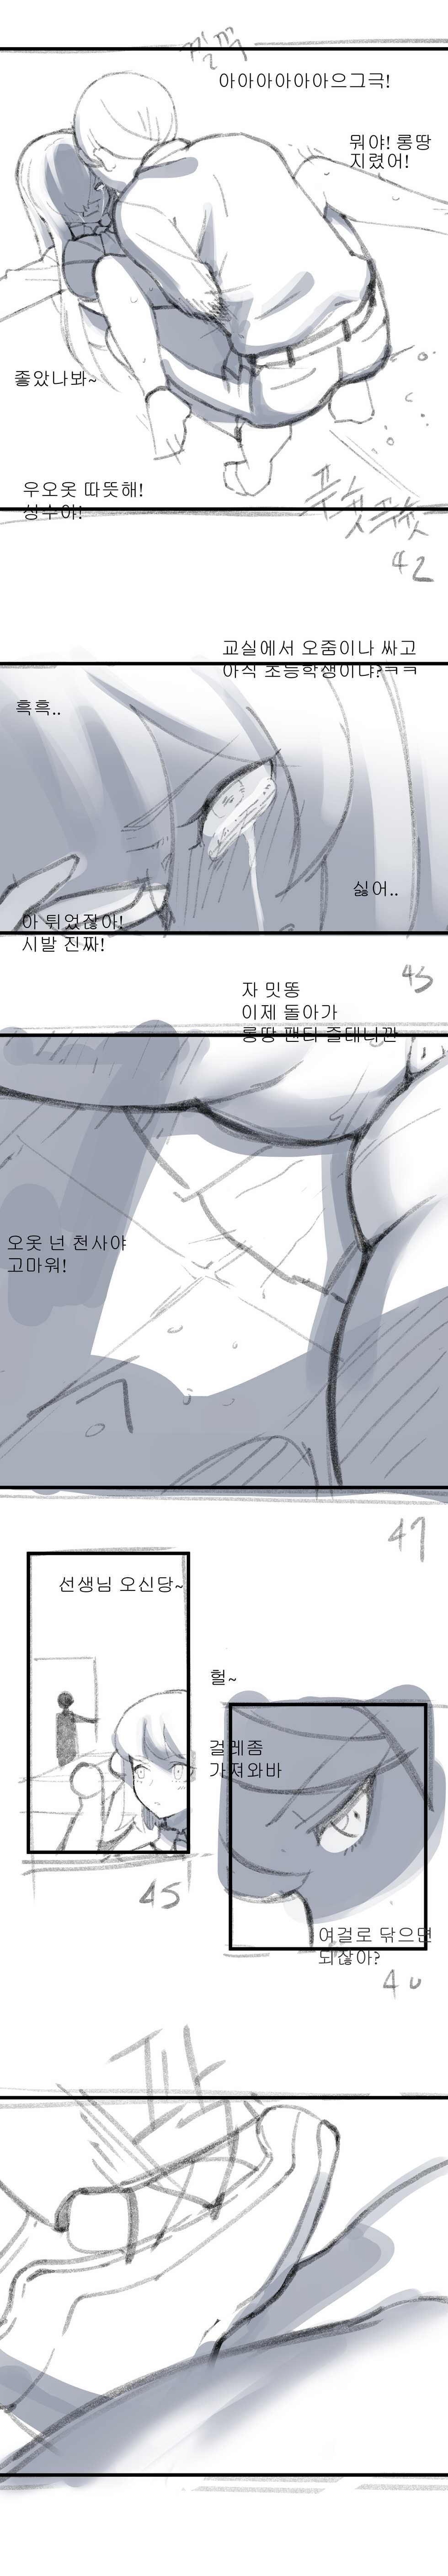 [8] ㄴㅅㅁ [Korean] - Page 14